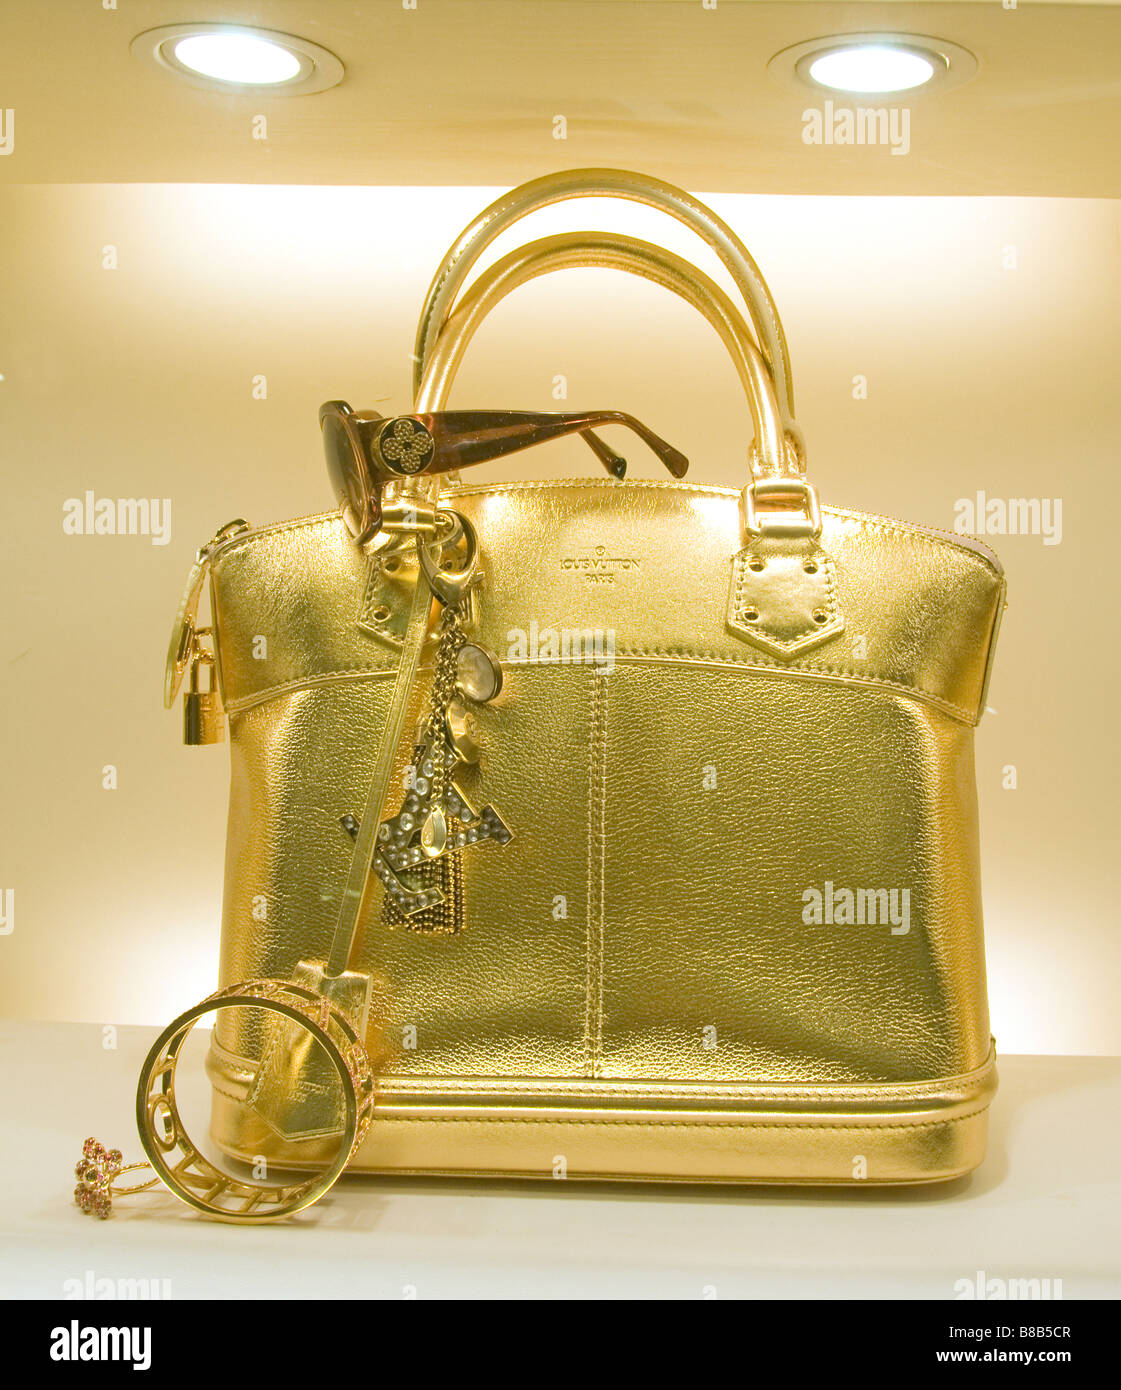 Louis Vuitton golden handbag bag shopping mall Petronas Twin Towers shop show window Kuala Lumpur Malaysia Stock Photo